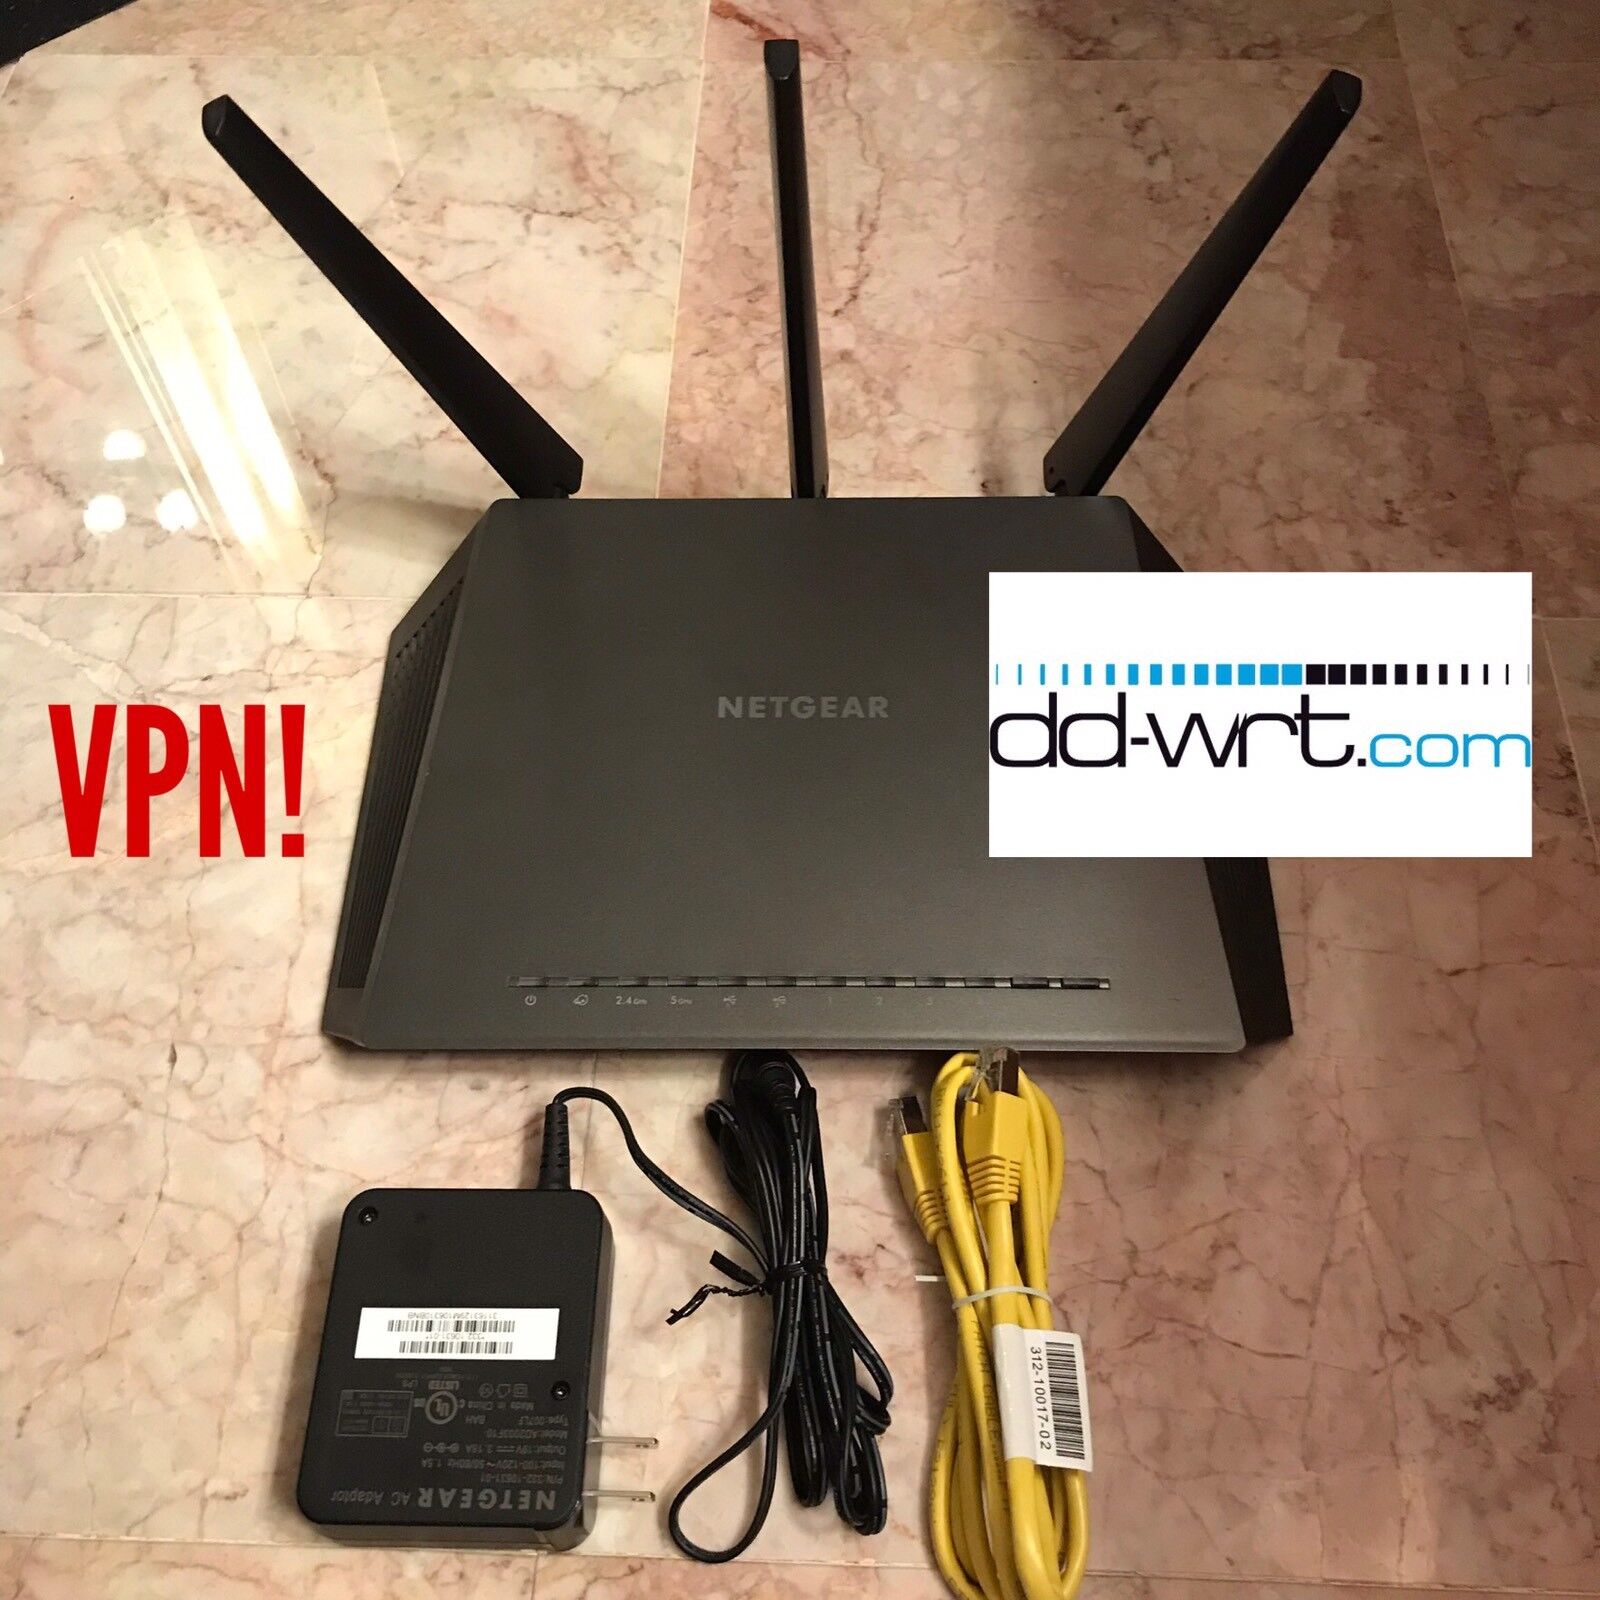 NETGEAR Nighthawk R7000 AC1900 Gigabit Router WITH DD-WRT VPN - READ🔥